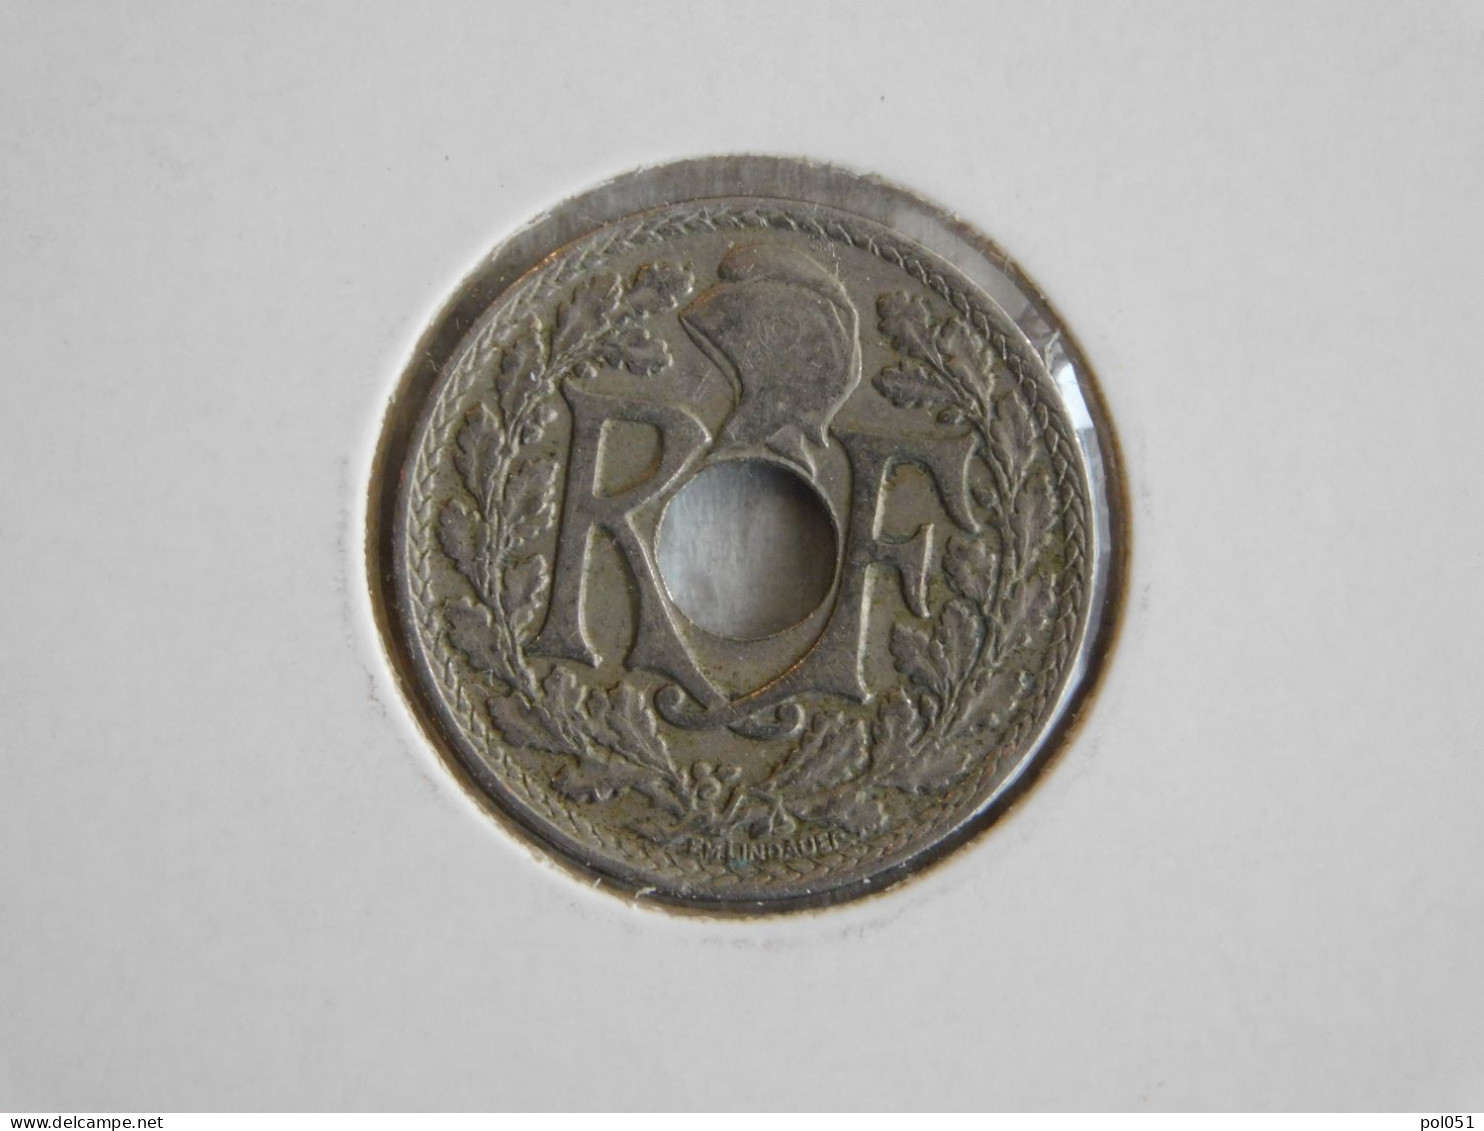 France 10 Centimes 1923 LINDAUER  (349) - 10 Centimes